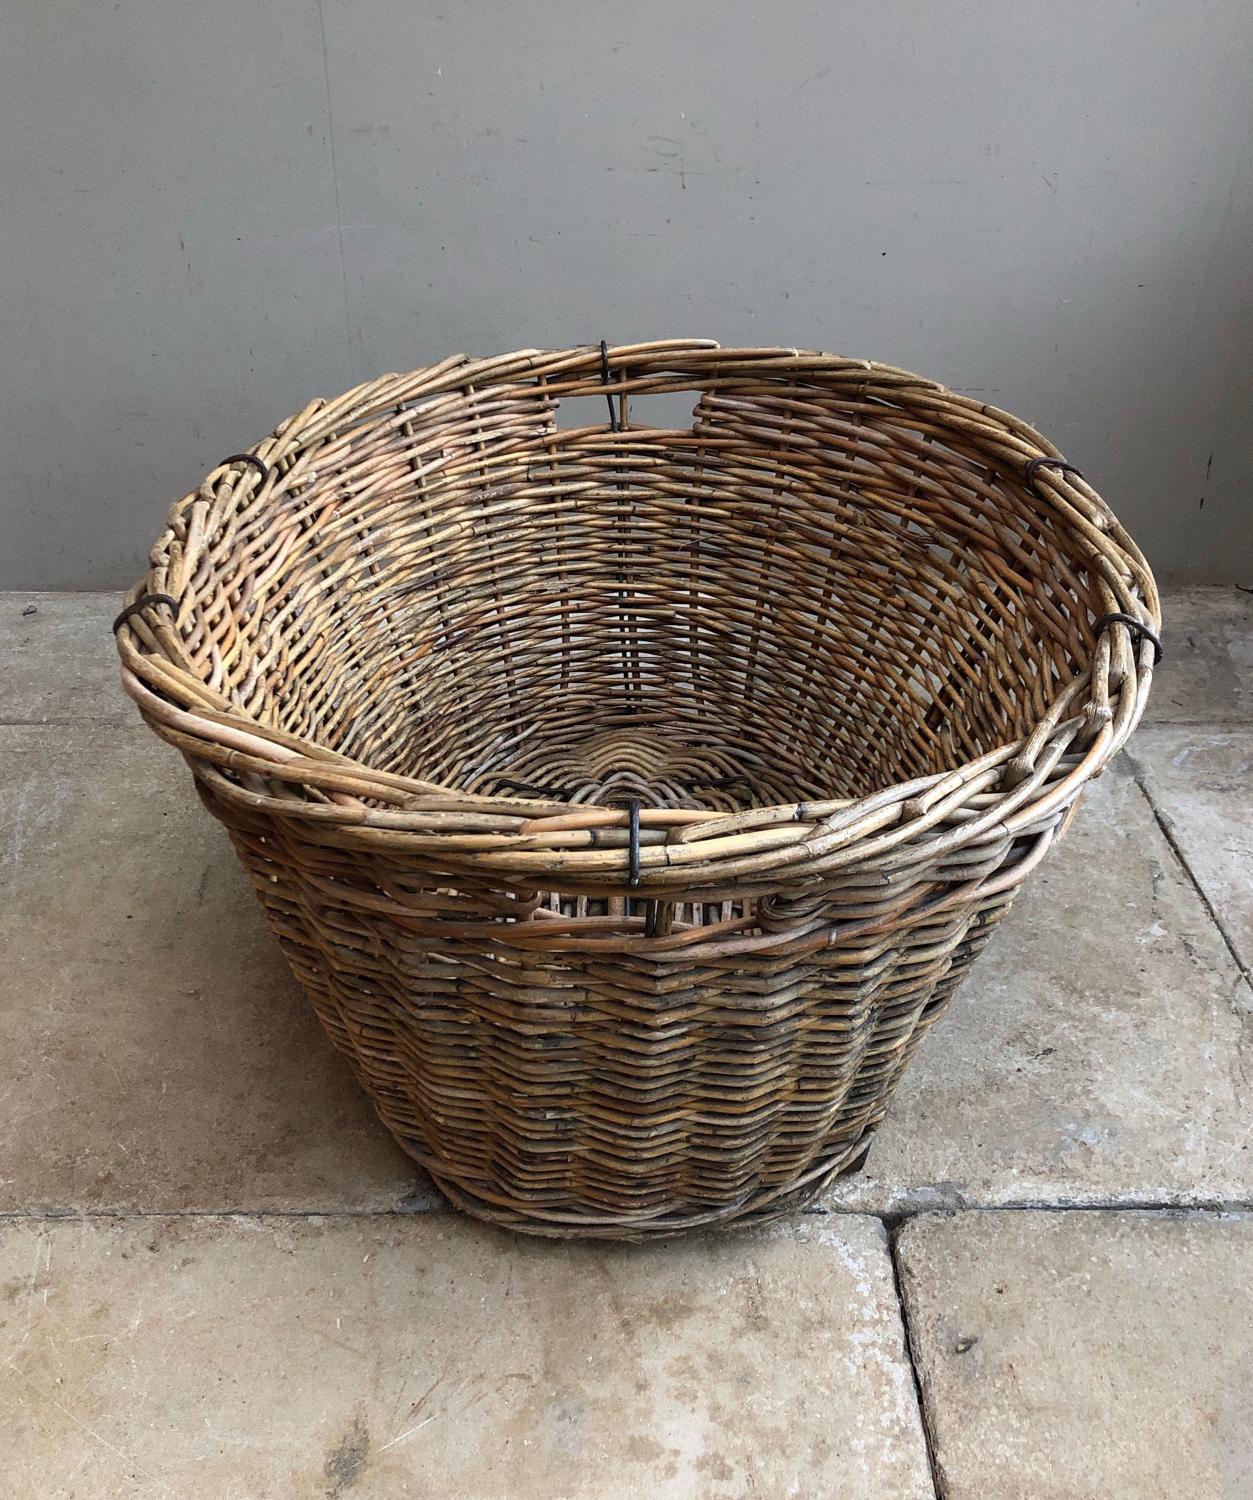 Huge Antique Laundry (Or Log) Basket with Wooden Slat Base